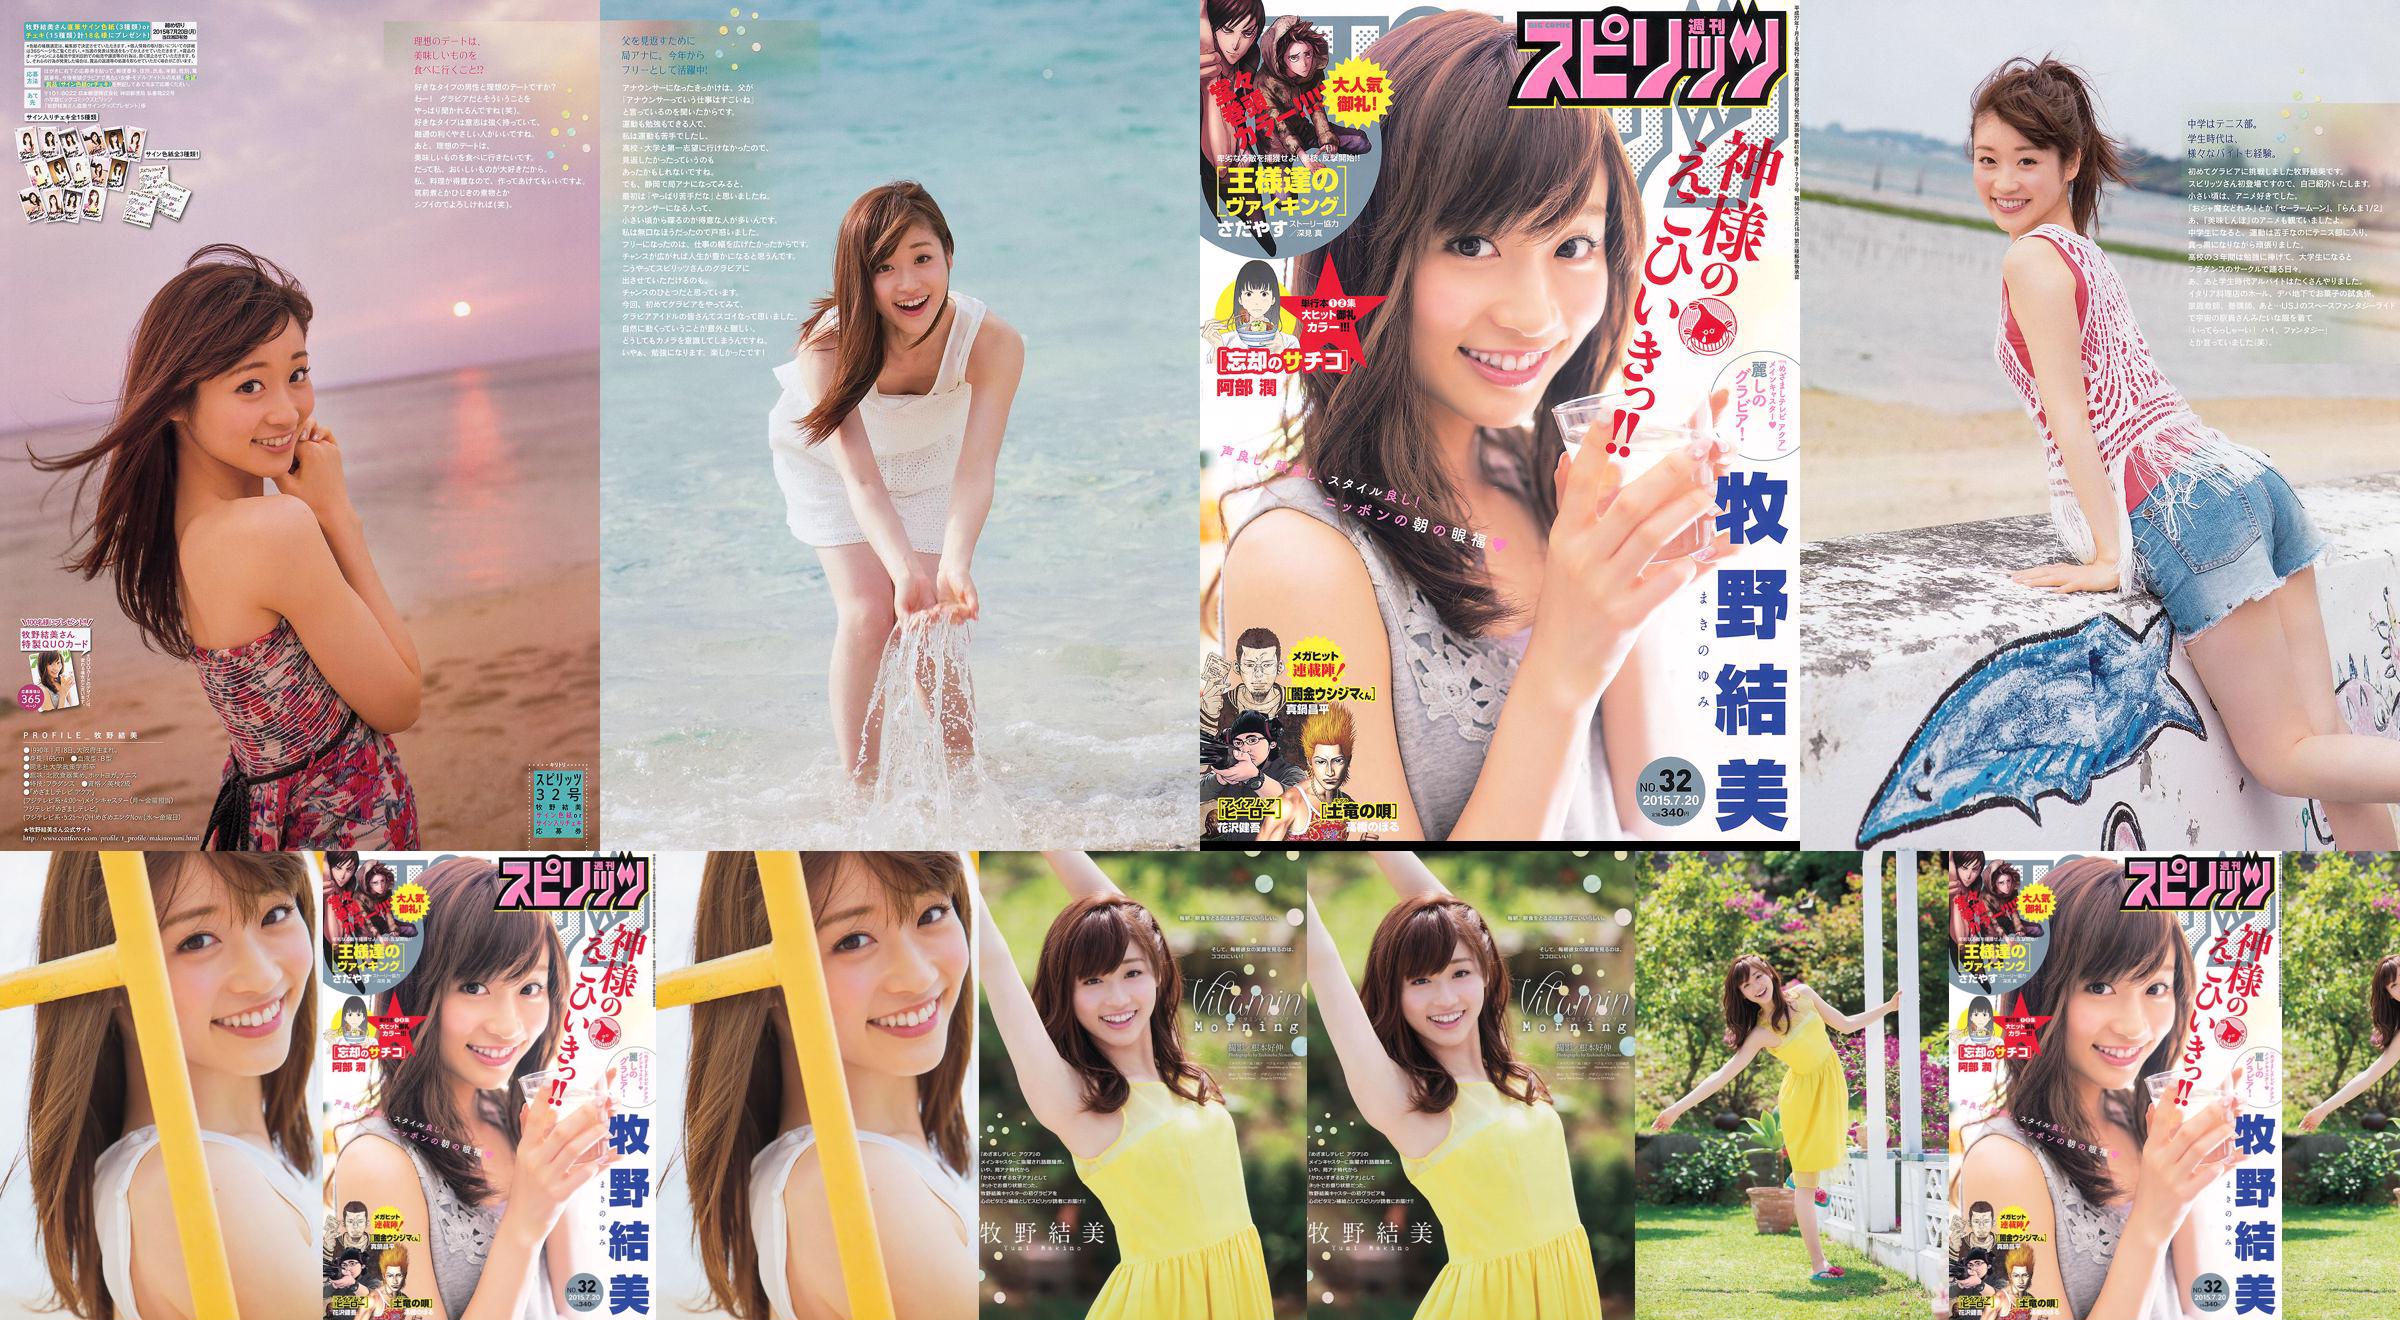 [Weekly Big Comic Spirits] Yumi Makino 2015 No.32 Photo Magazine No.35d969 Pagina 1